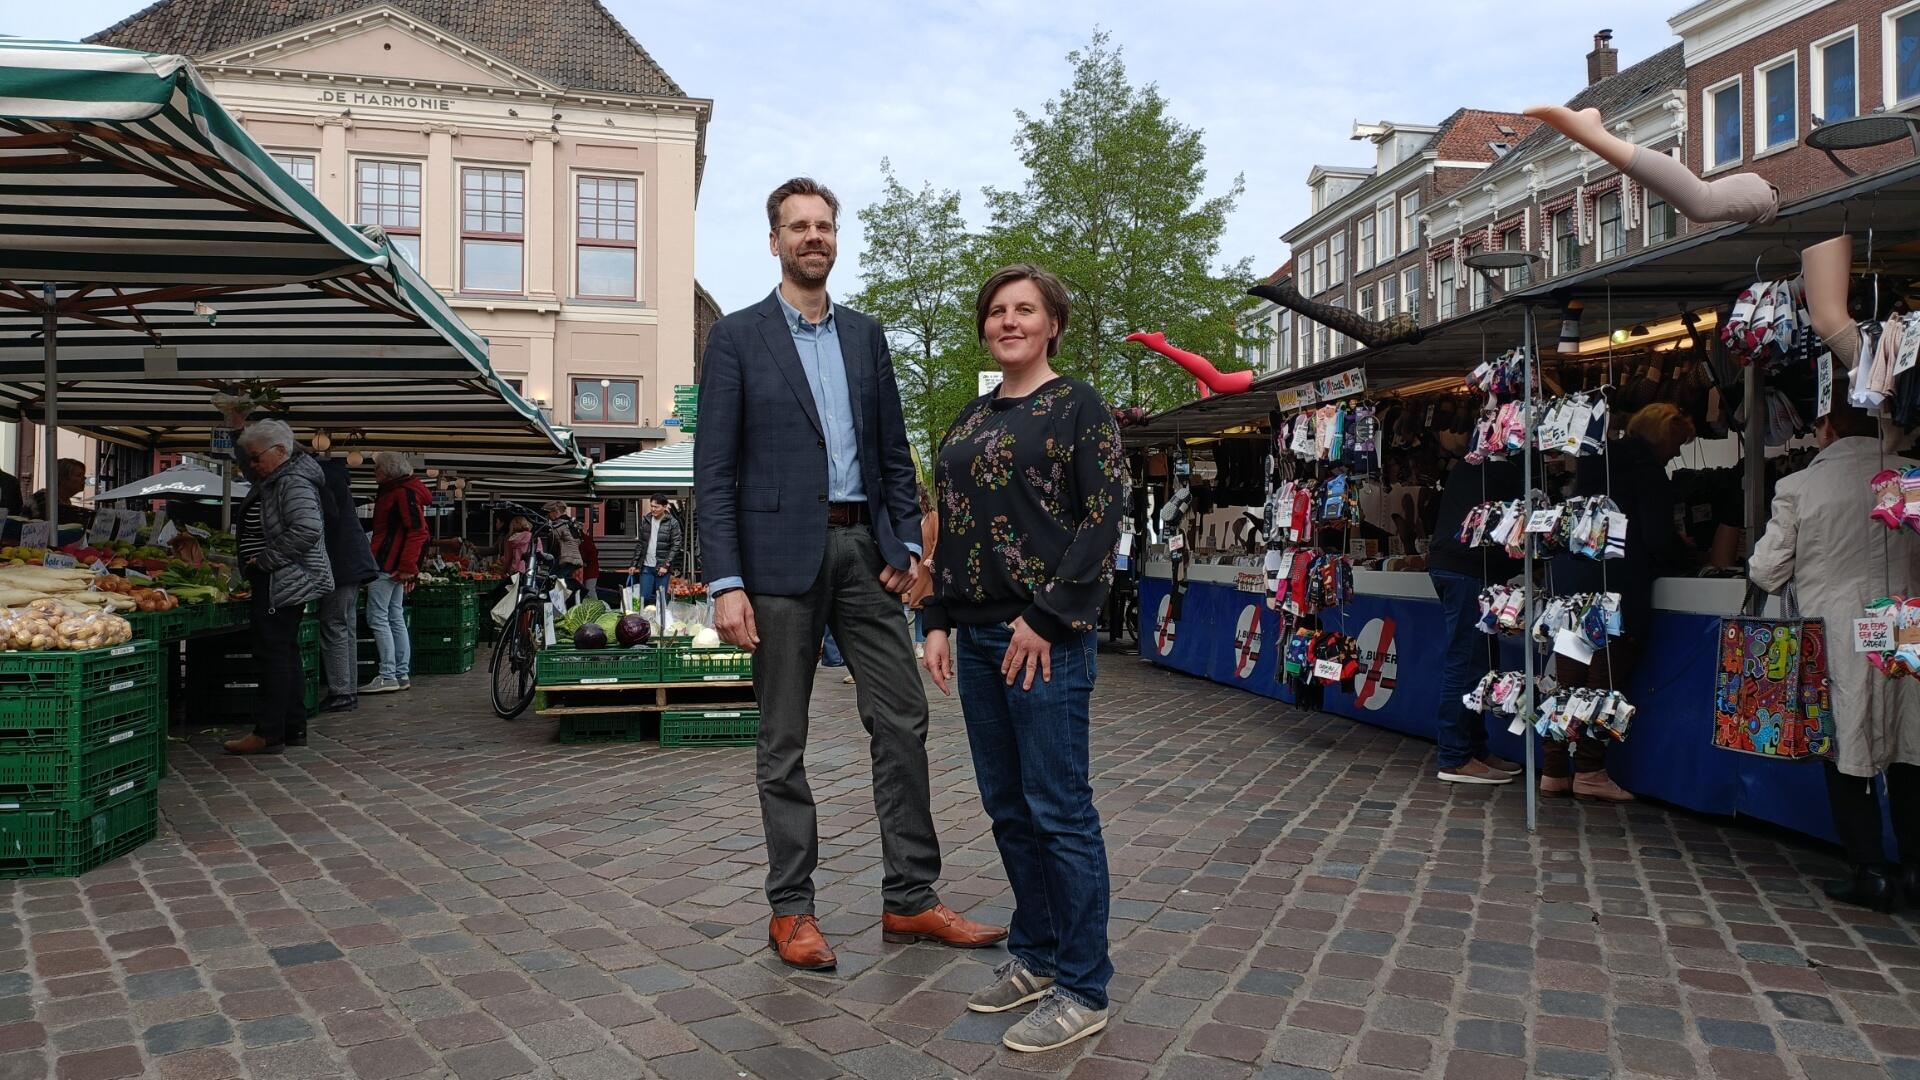 Riemer en Jolanda staan op de markt in Zwolle